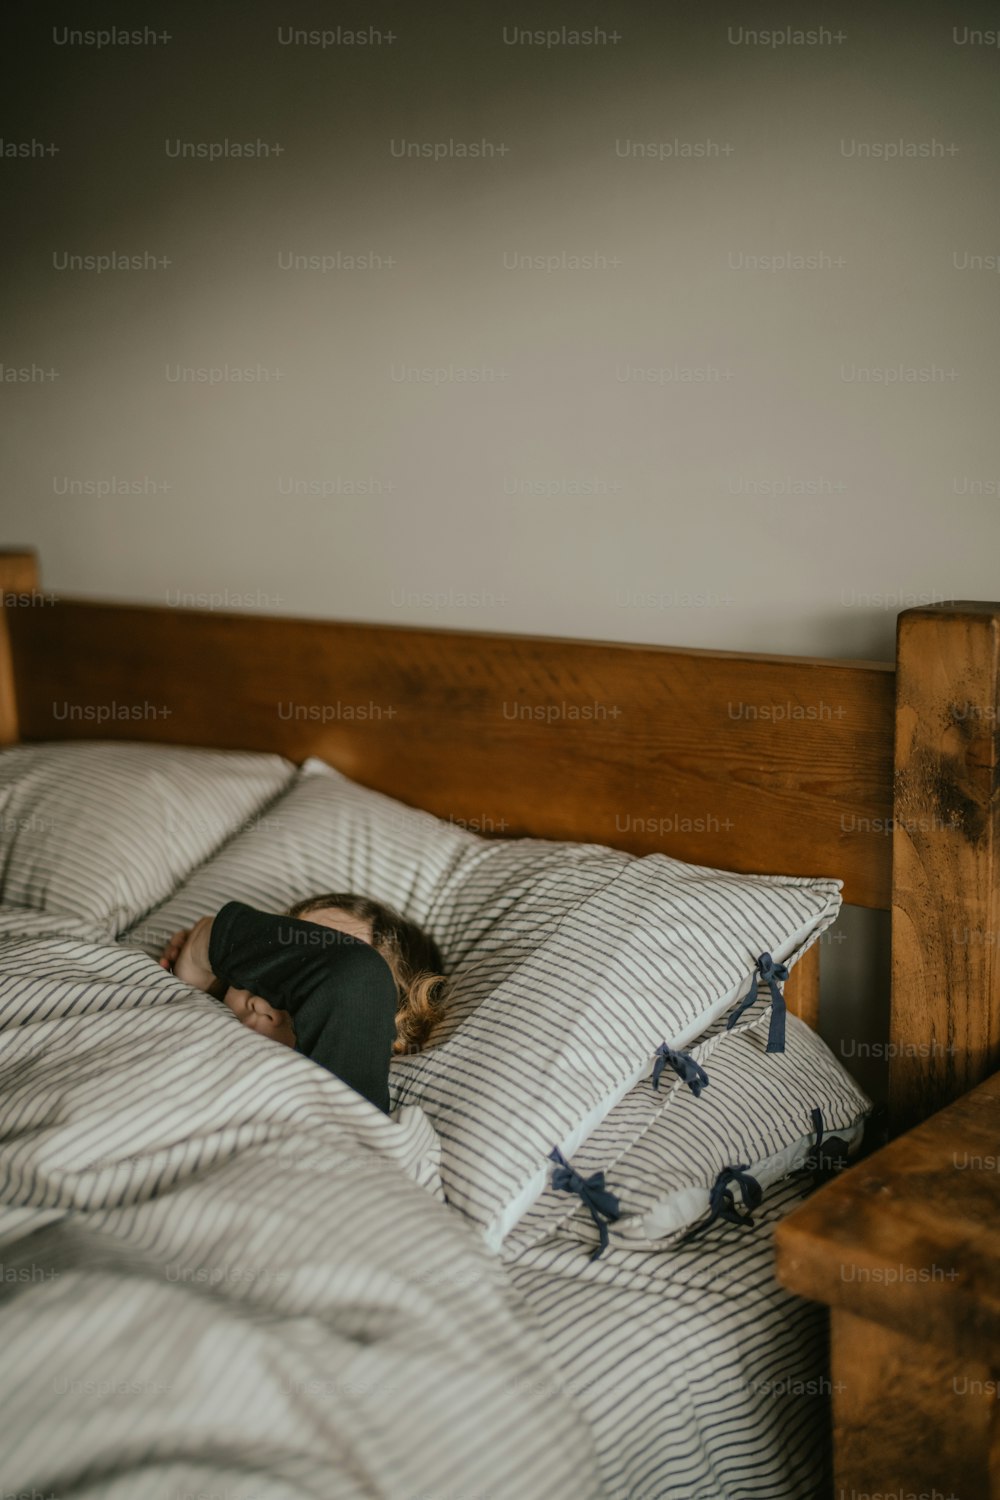 una persona durmiendo en una cama